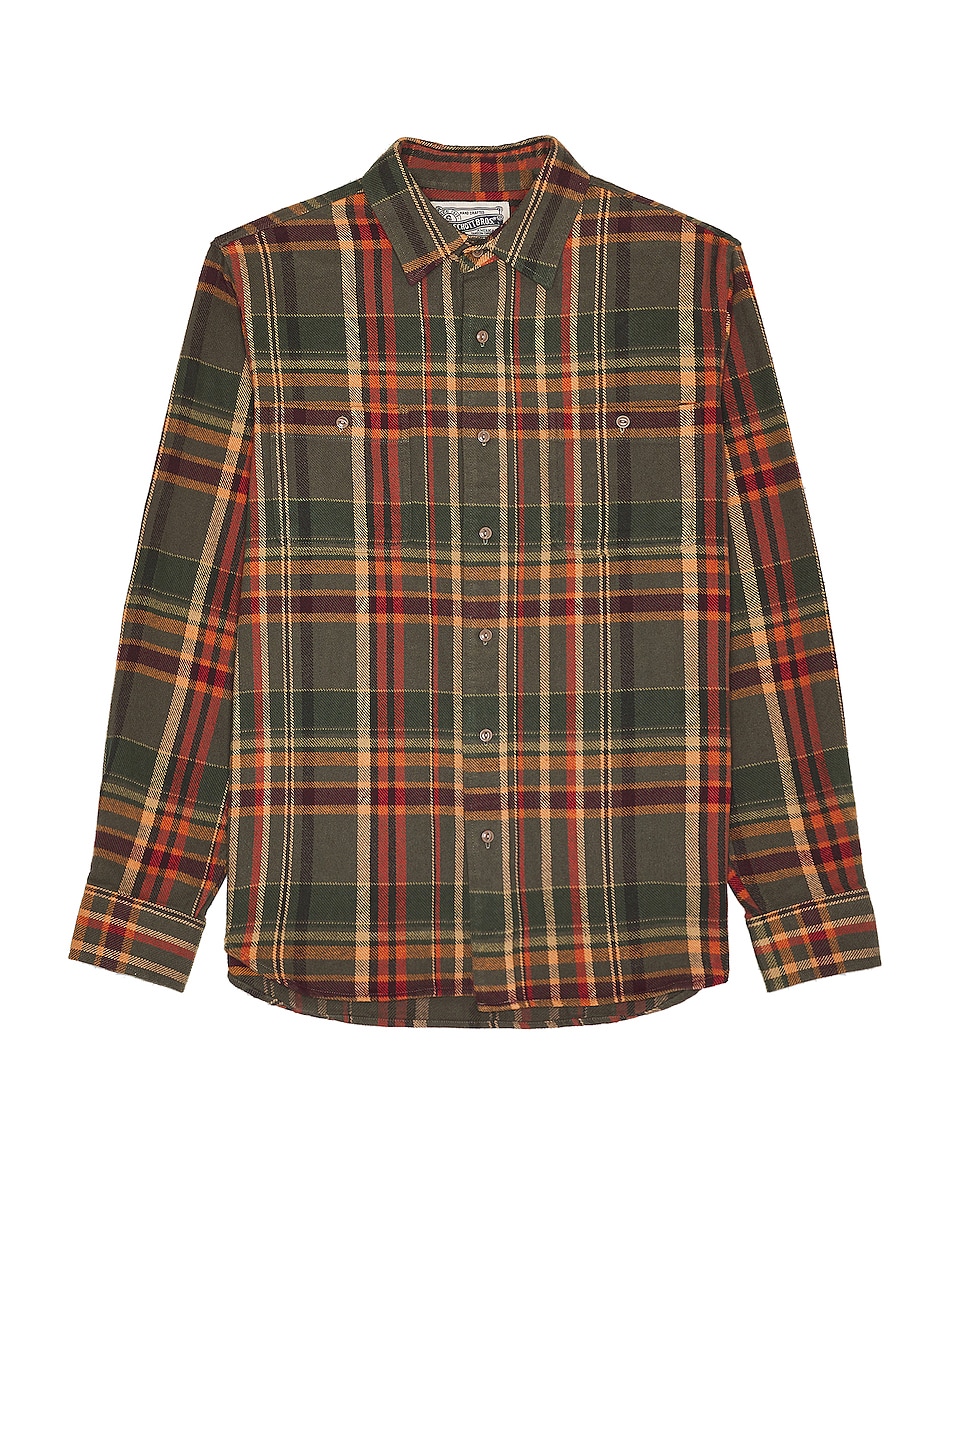 Schott Plaid Cotton Flannel Shirt in Olive | FWRD